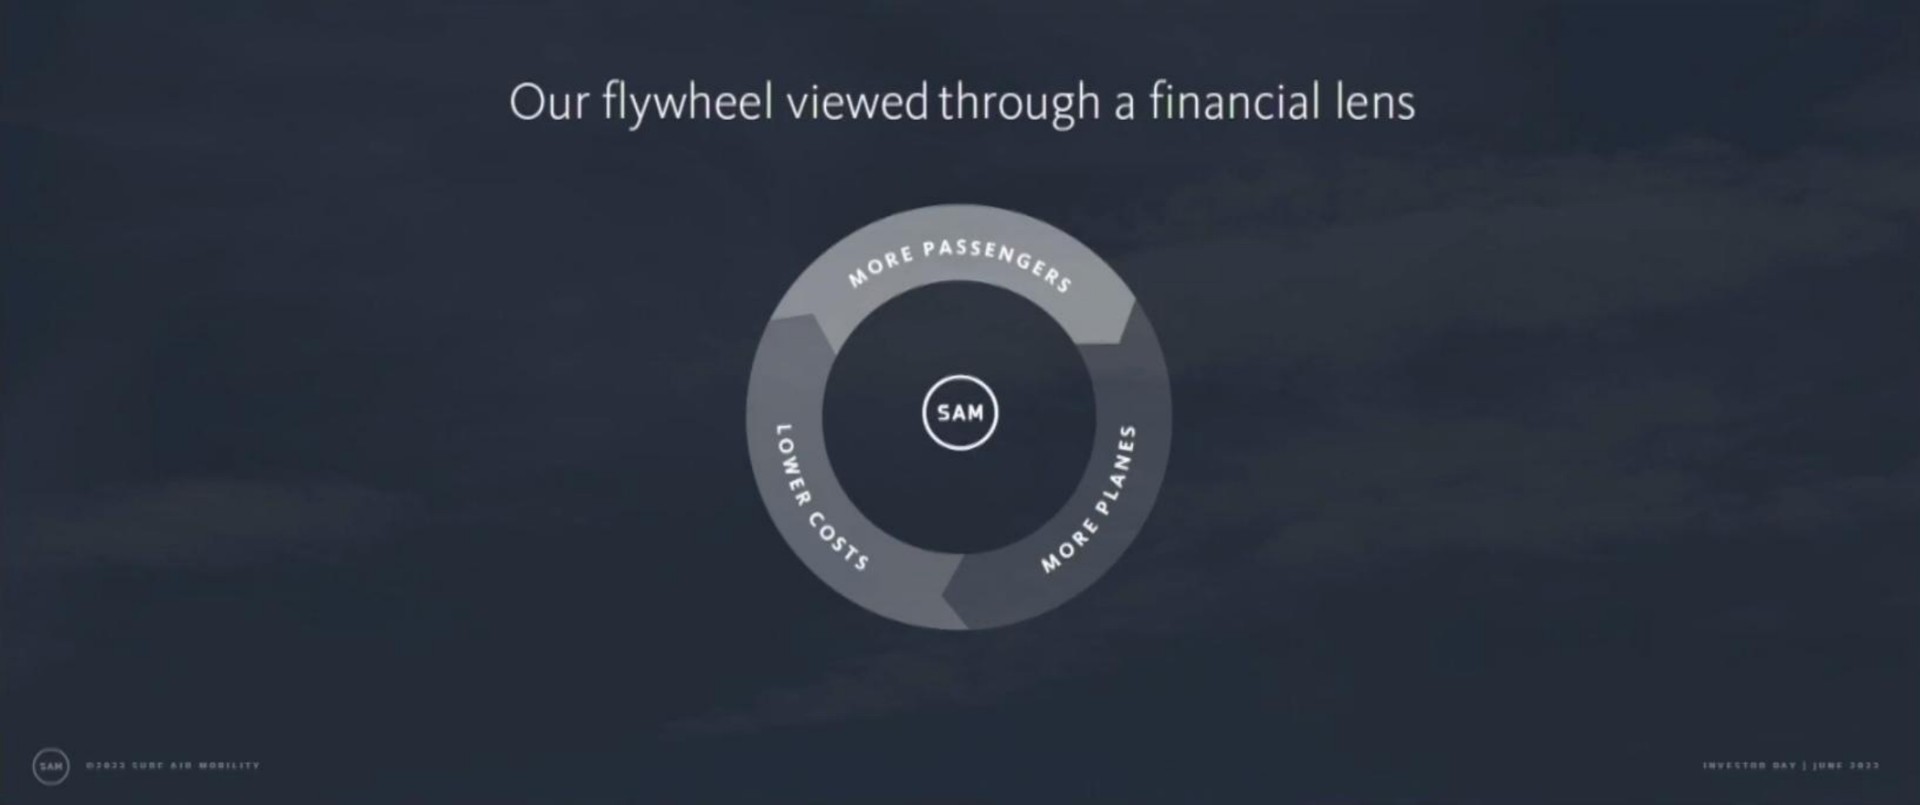 our flywheel viewed through a financial lens | Surf Air